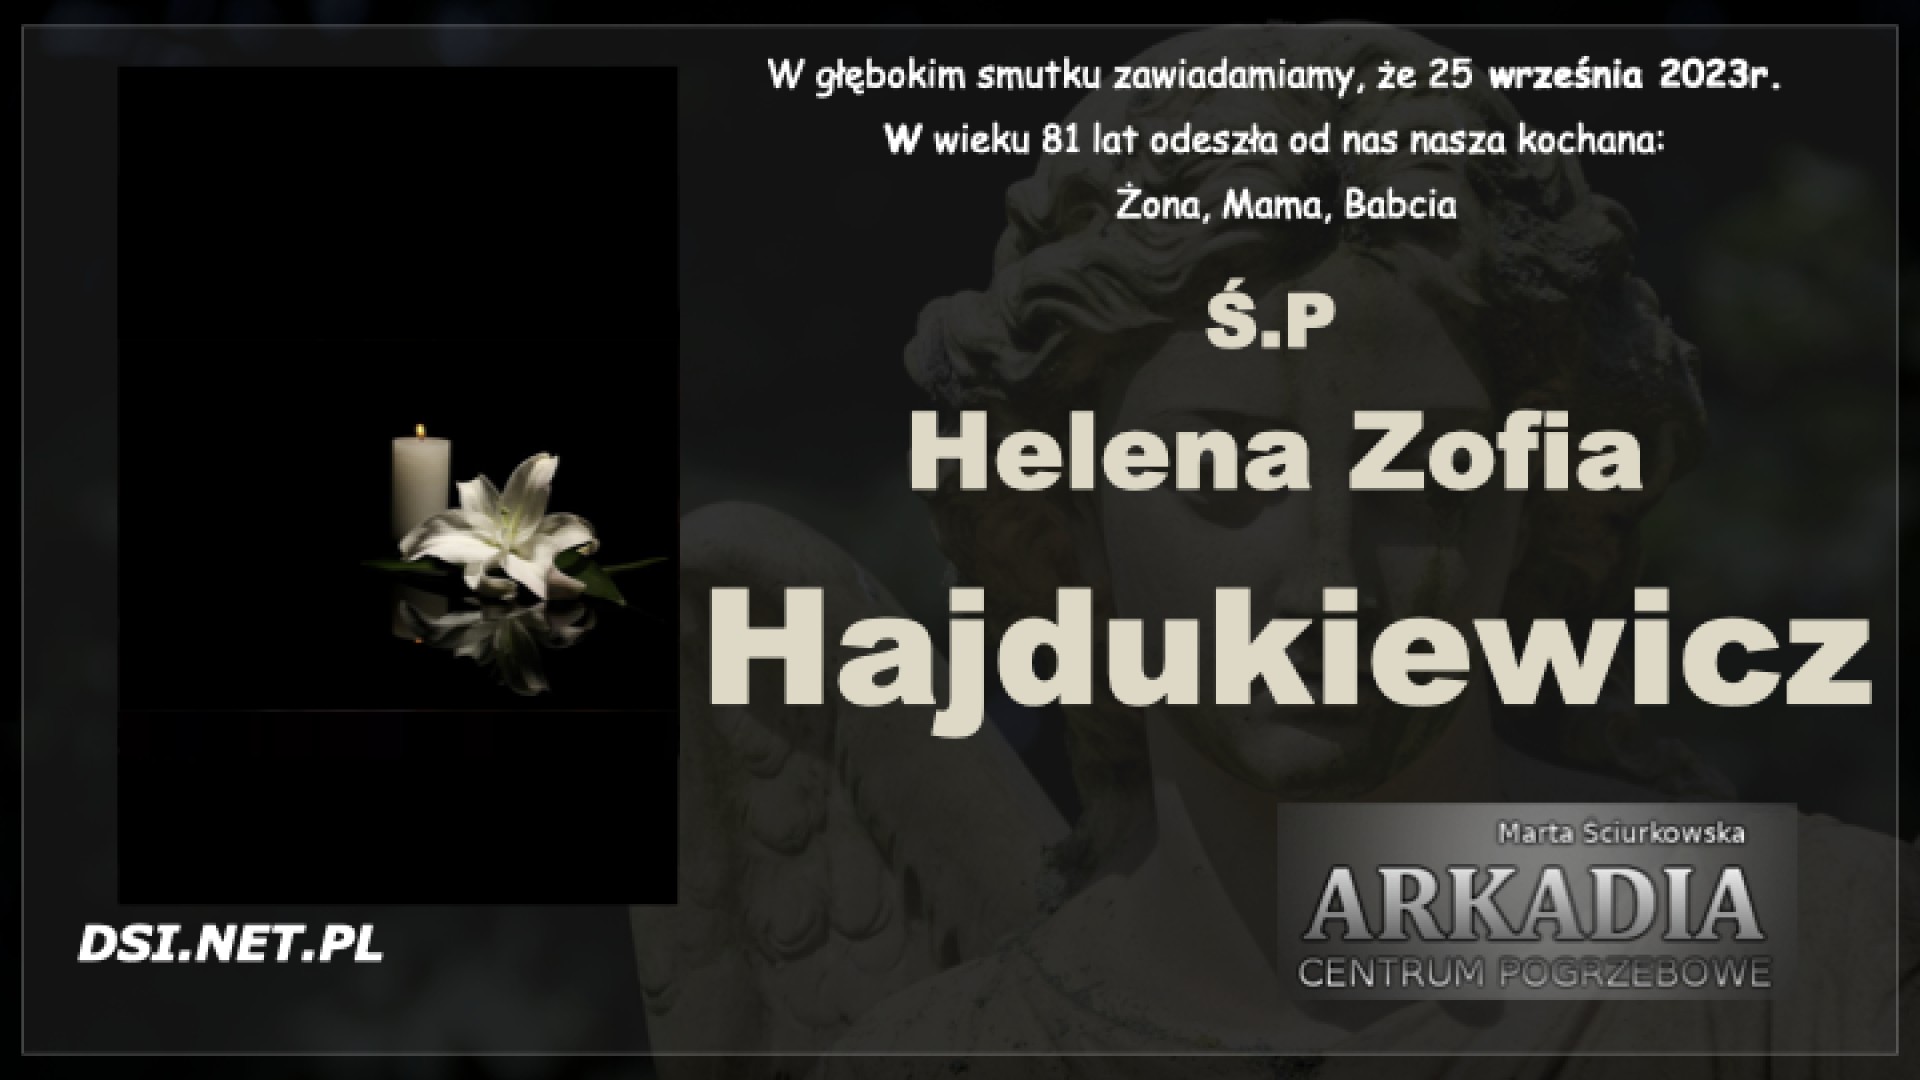 Ś.P. Helena Zofia Hajdukiewicz